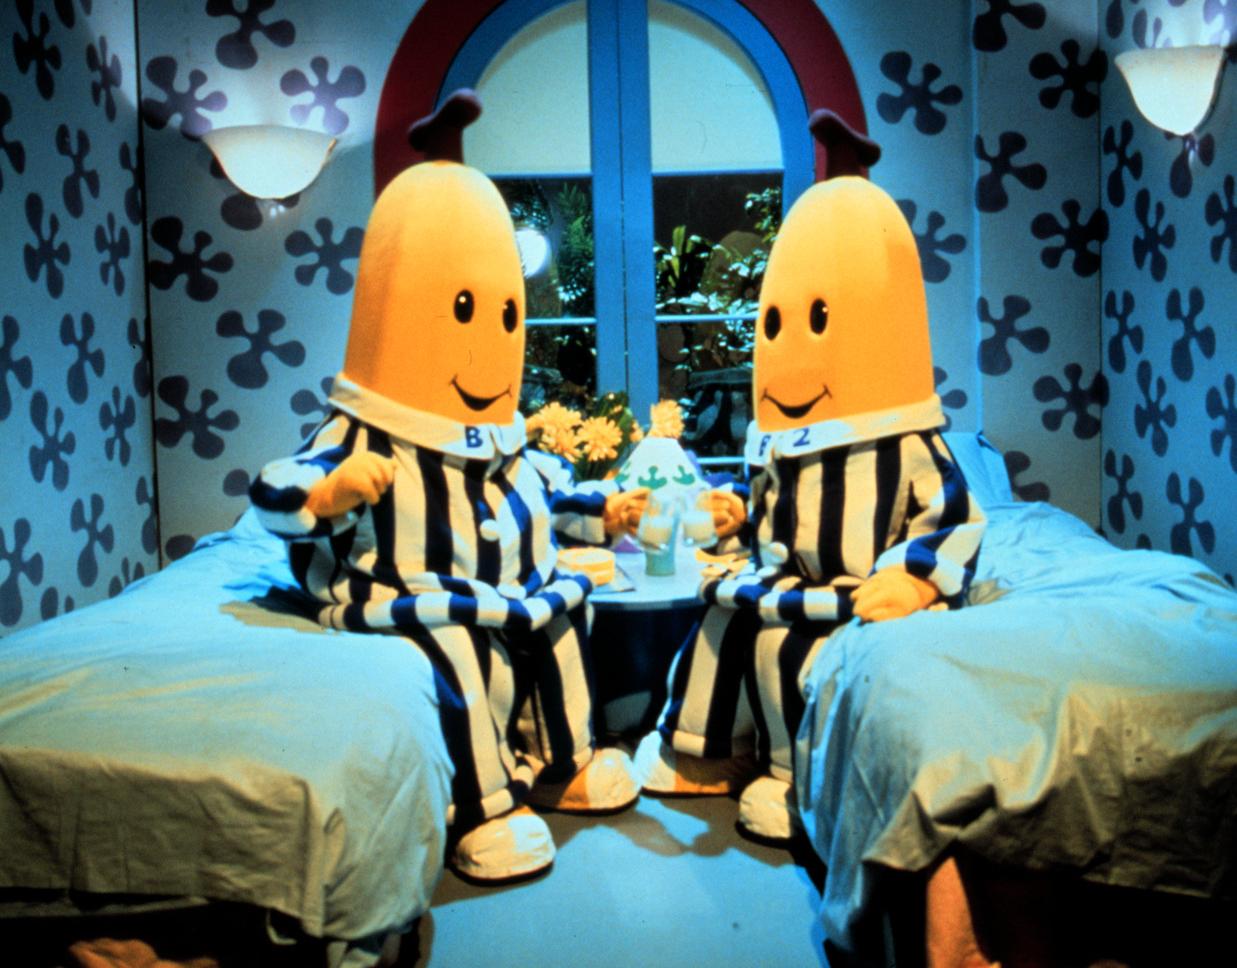 Gunnar Ernblad gjorde rösten till B1 i ”Bananer i pyjamas”.